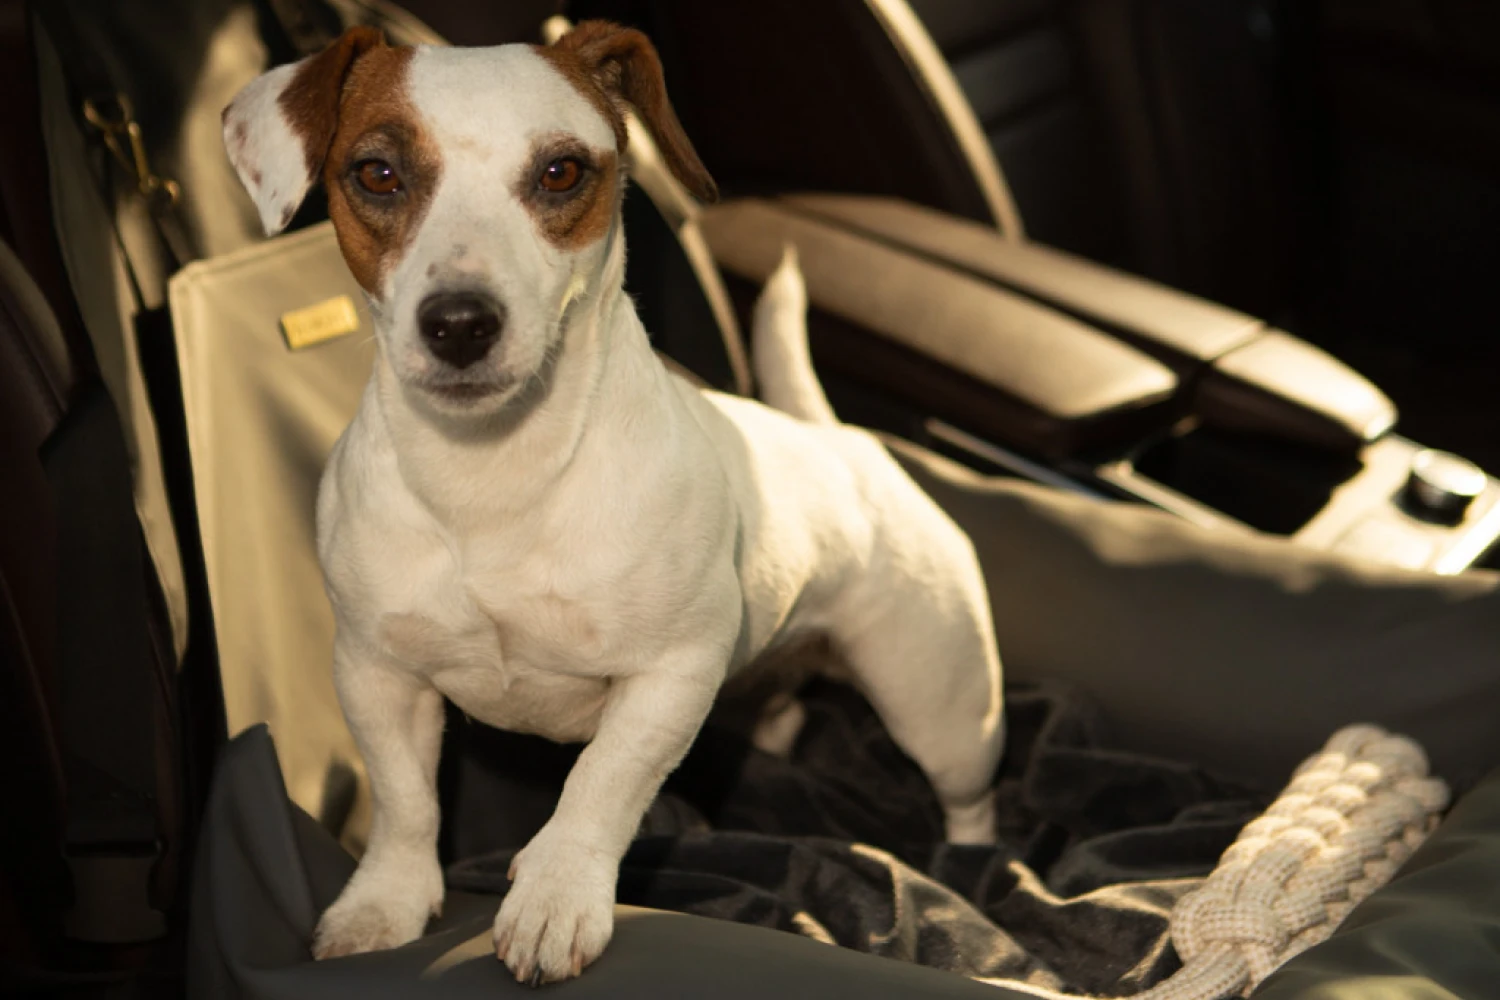 Chrysler Pacifica Dog Car Seat for Pekingese